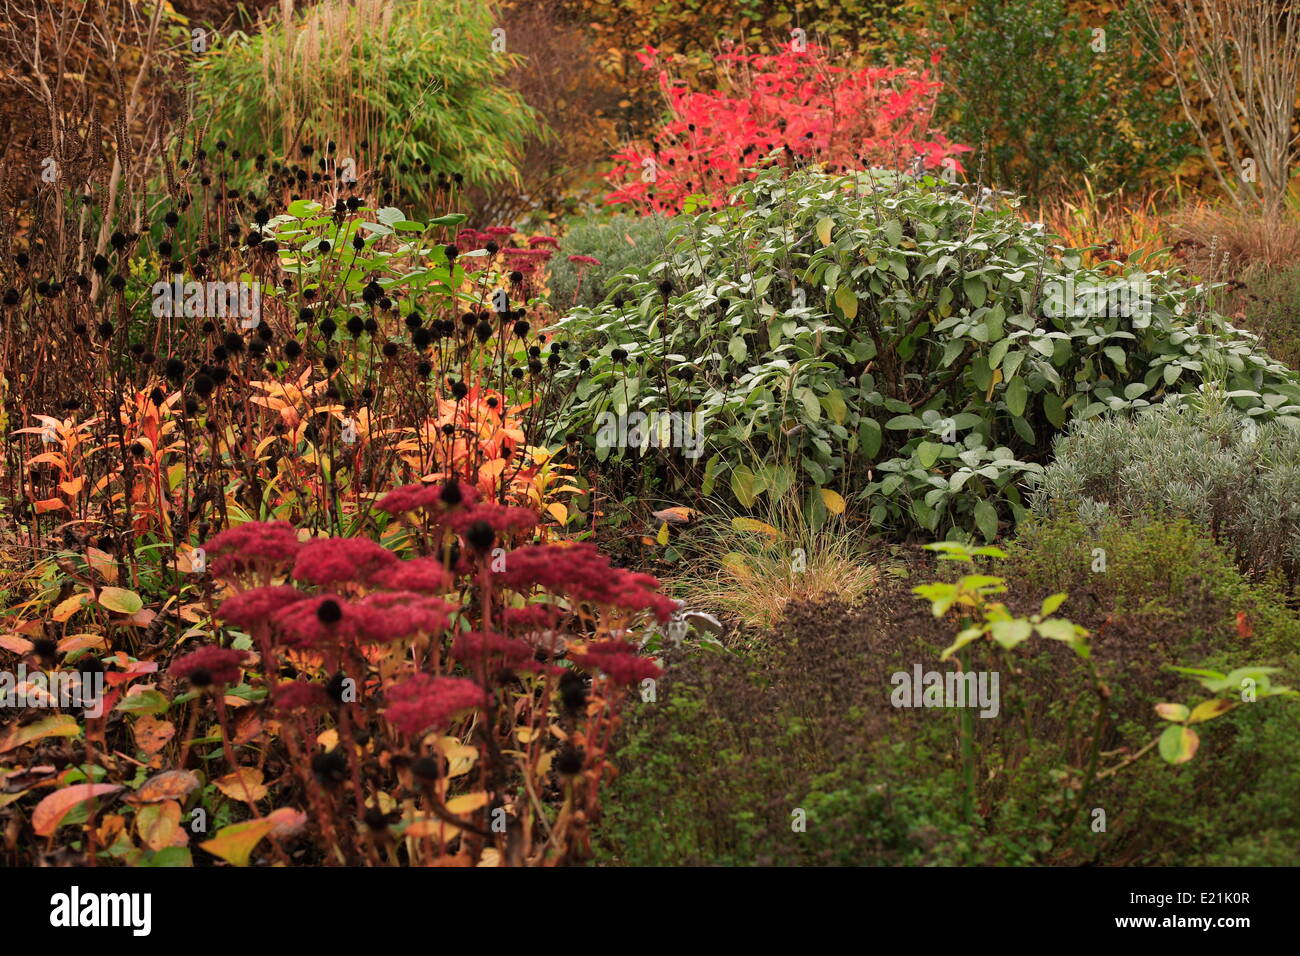 Autumn atmosphere Stock Photo